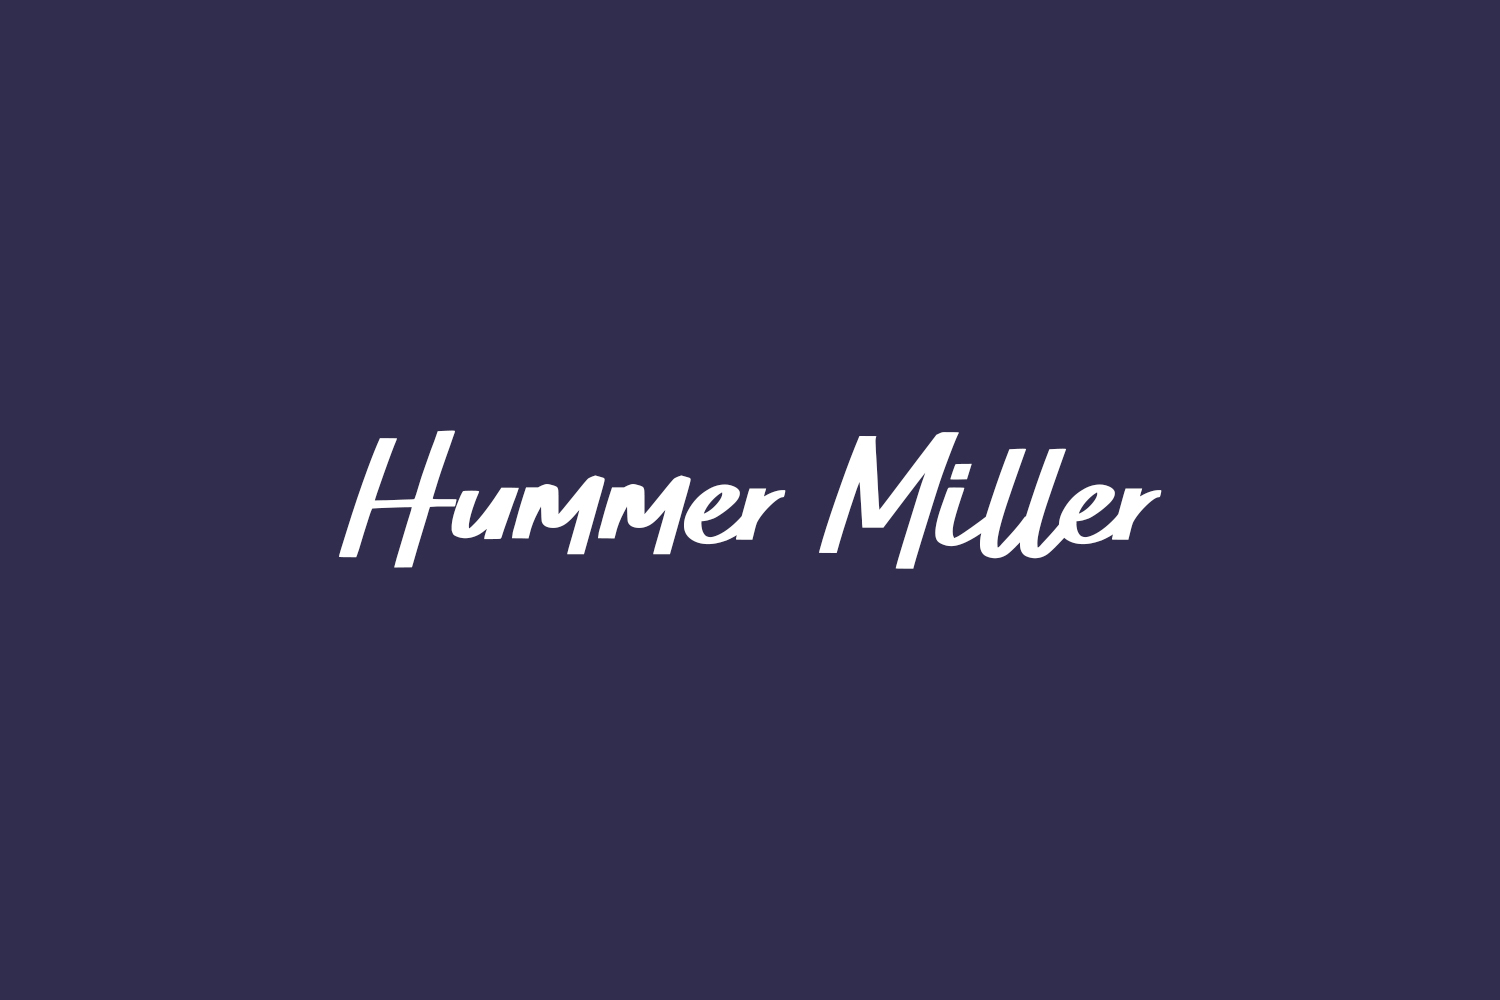 Hummer Miller Free Font